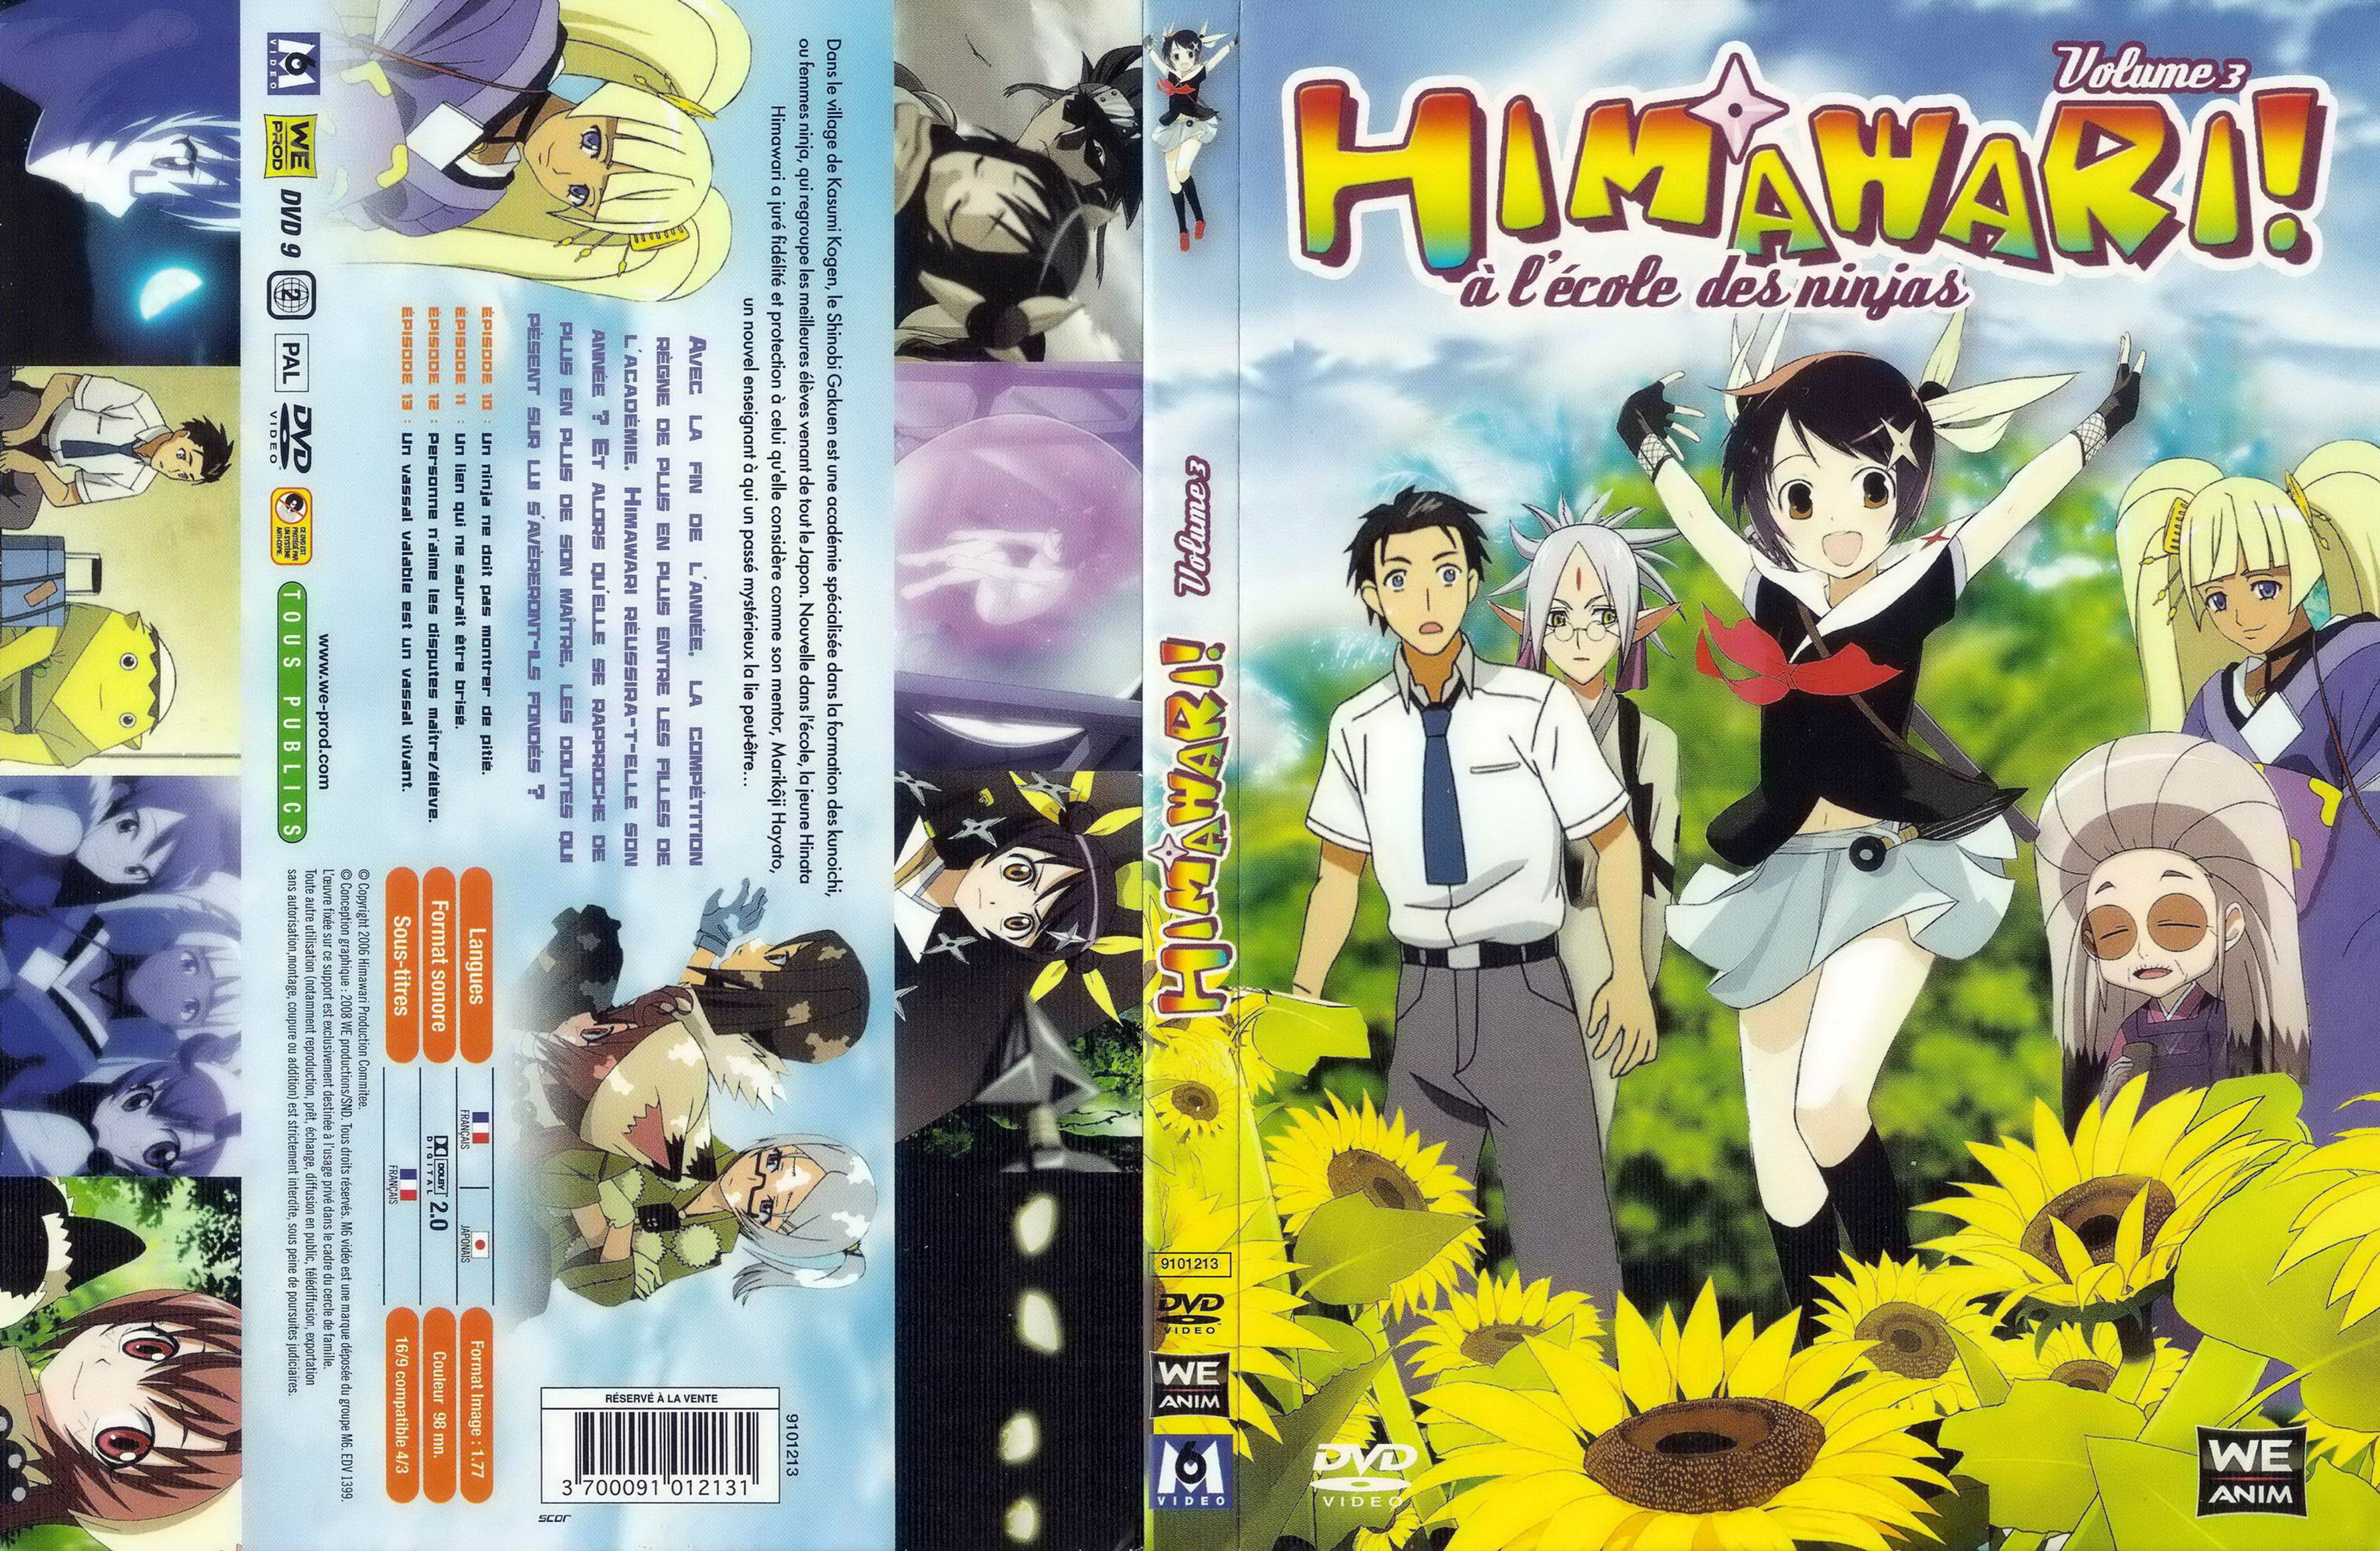 Jaquette DVD Himawari vol 03